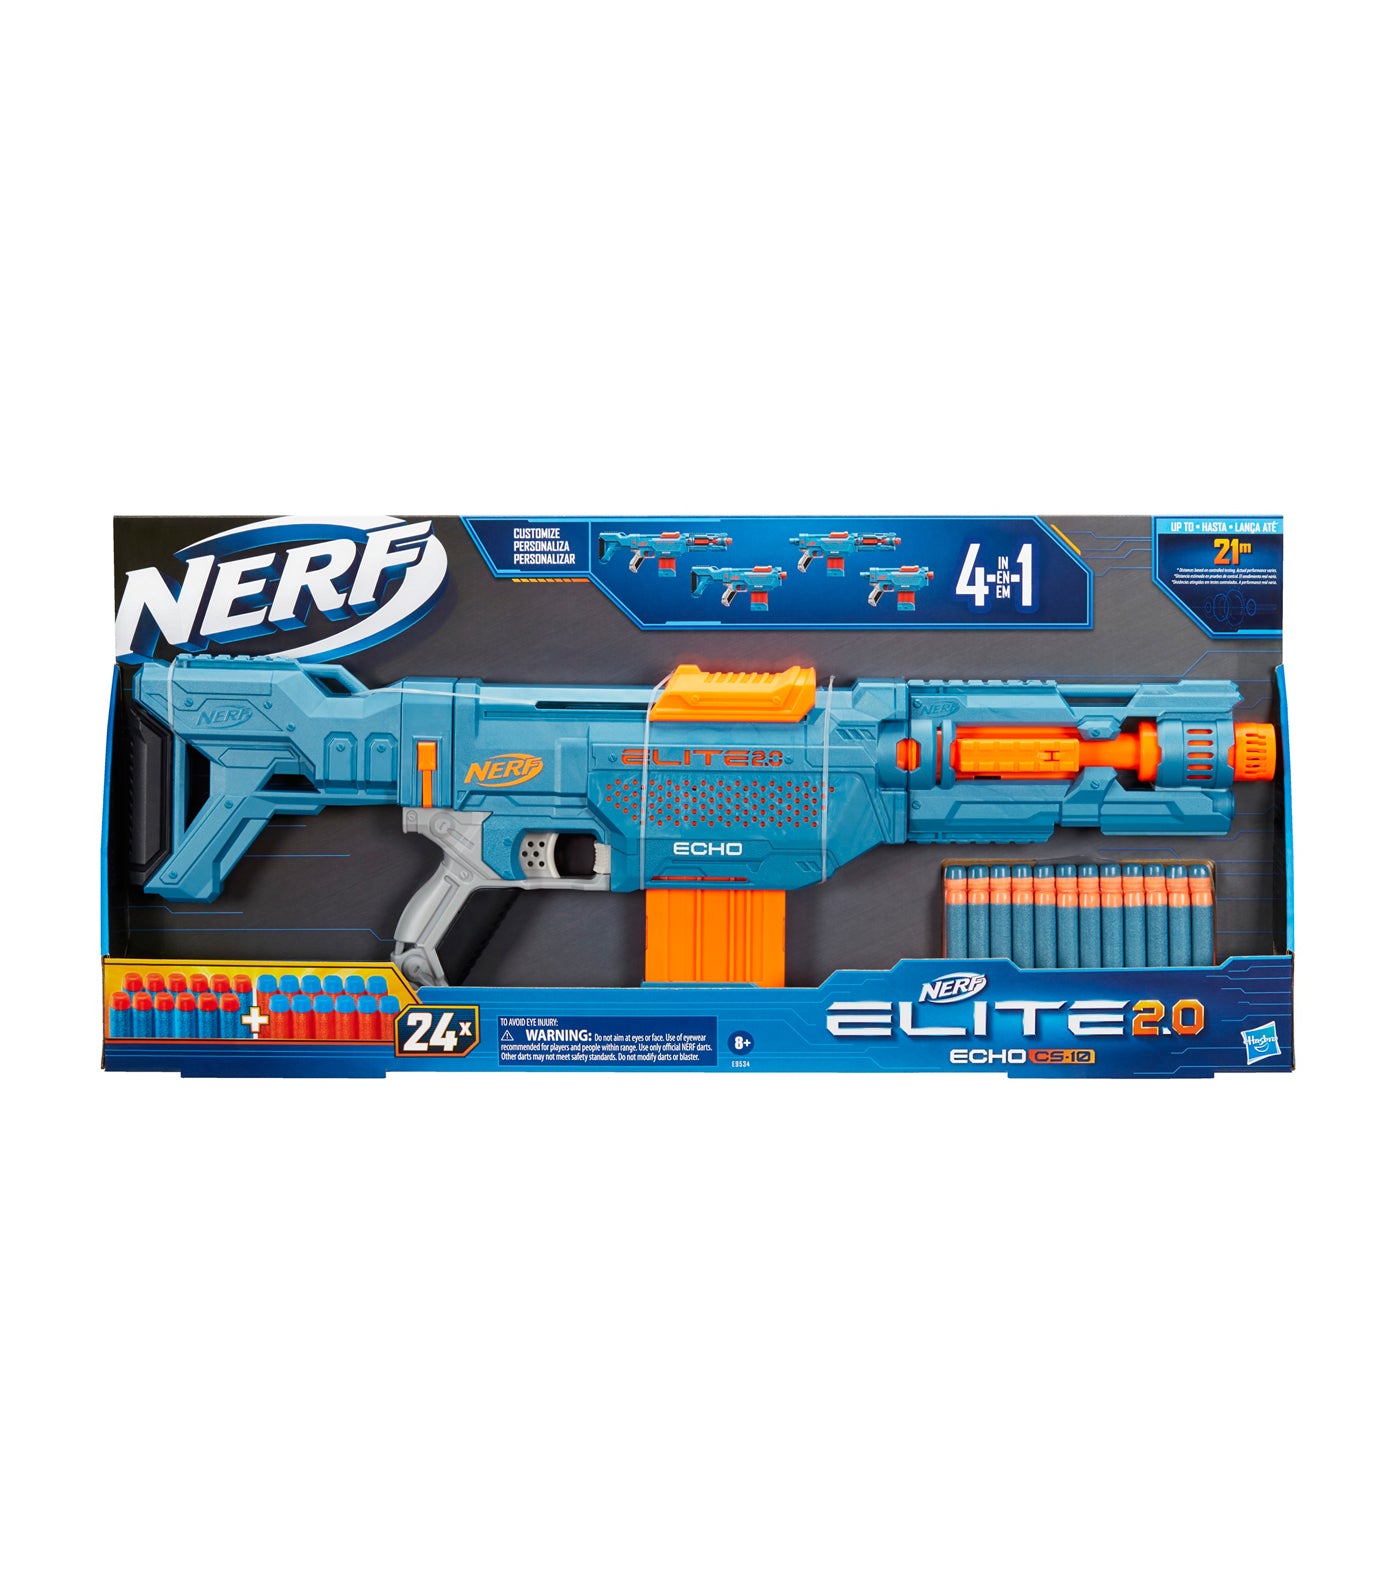 Fortnite AR-L Nerf Elite Dart Blaster 